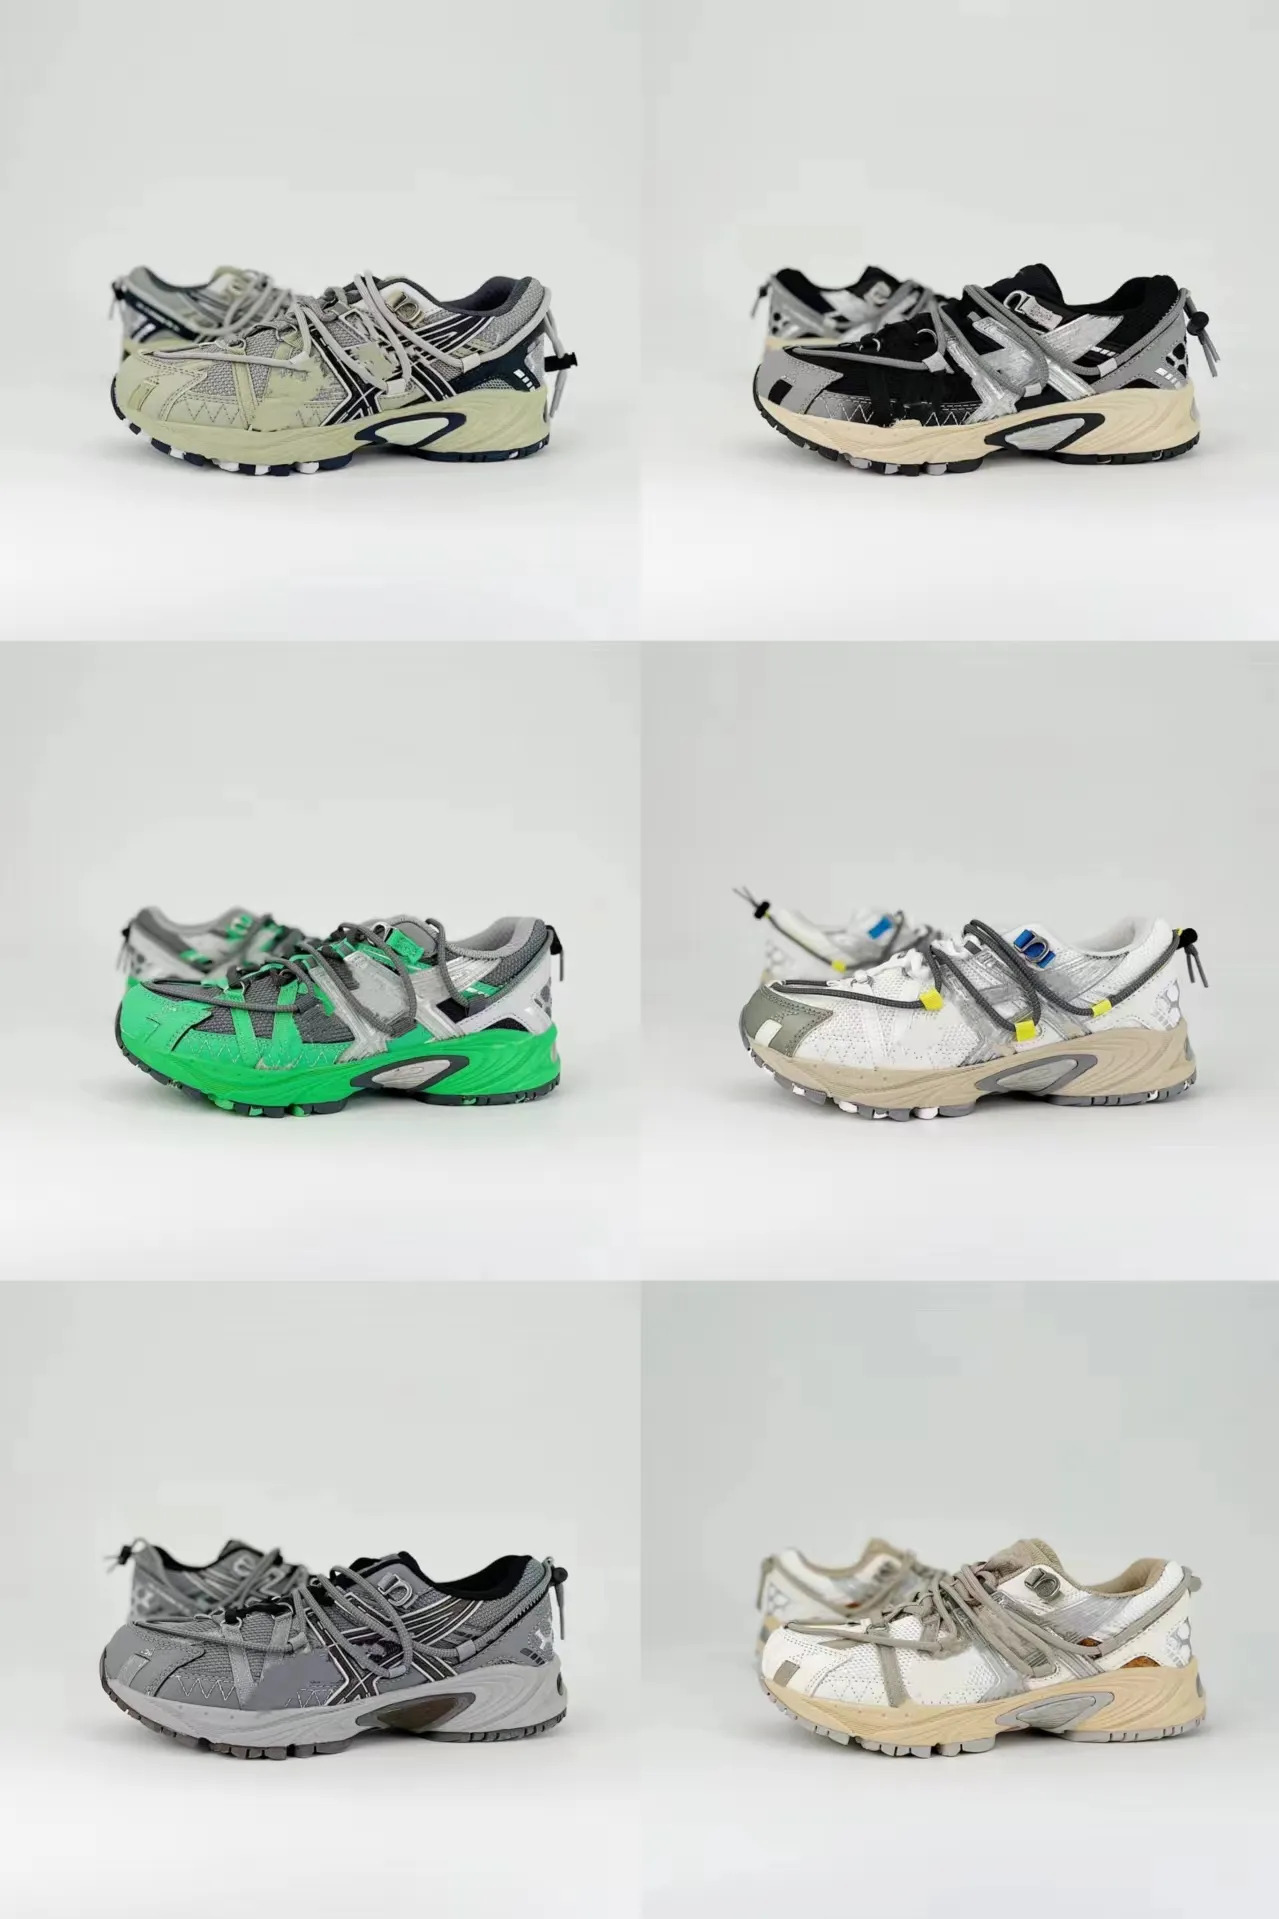 Tiger Ka Hana TR V2 Retro Functional Casual Sneaker Shoe Design continúa los zapatos de la serie.